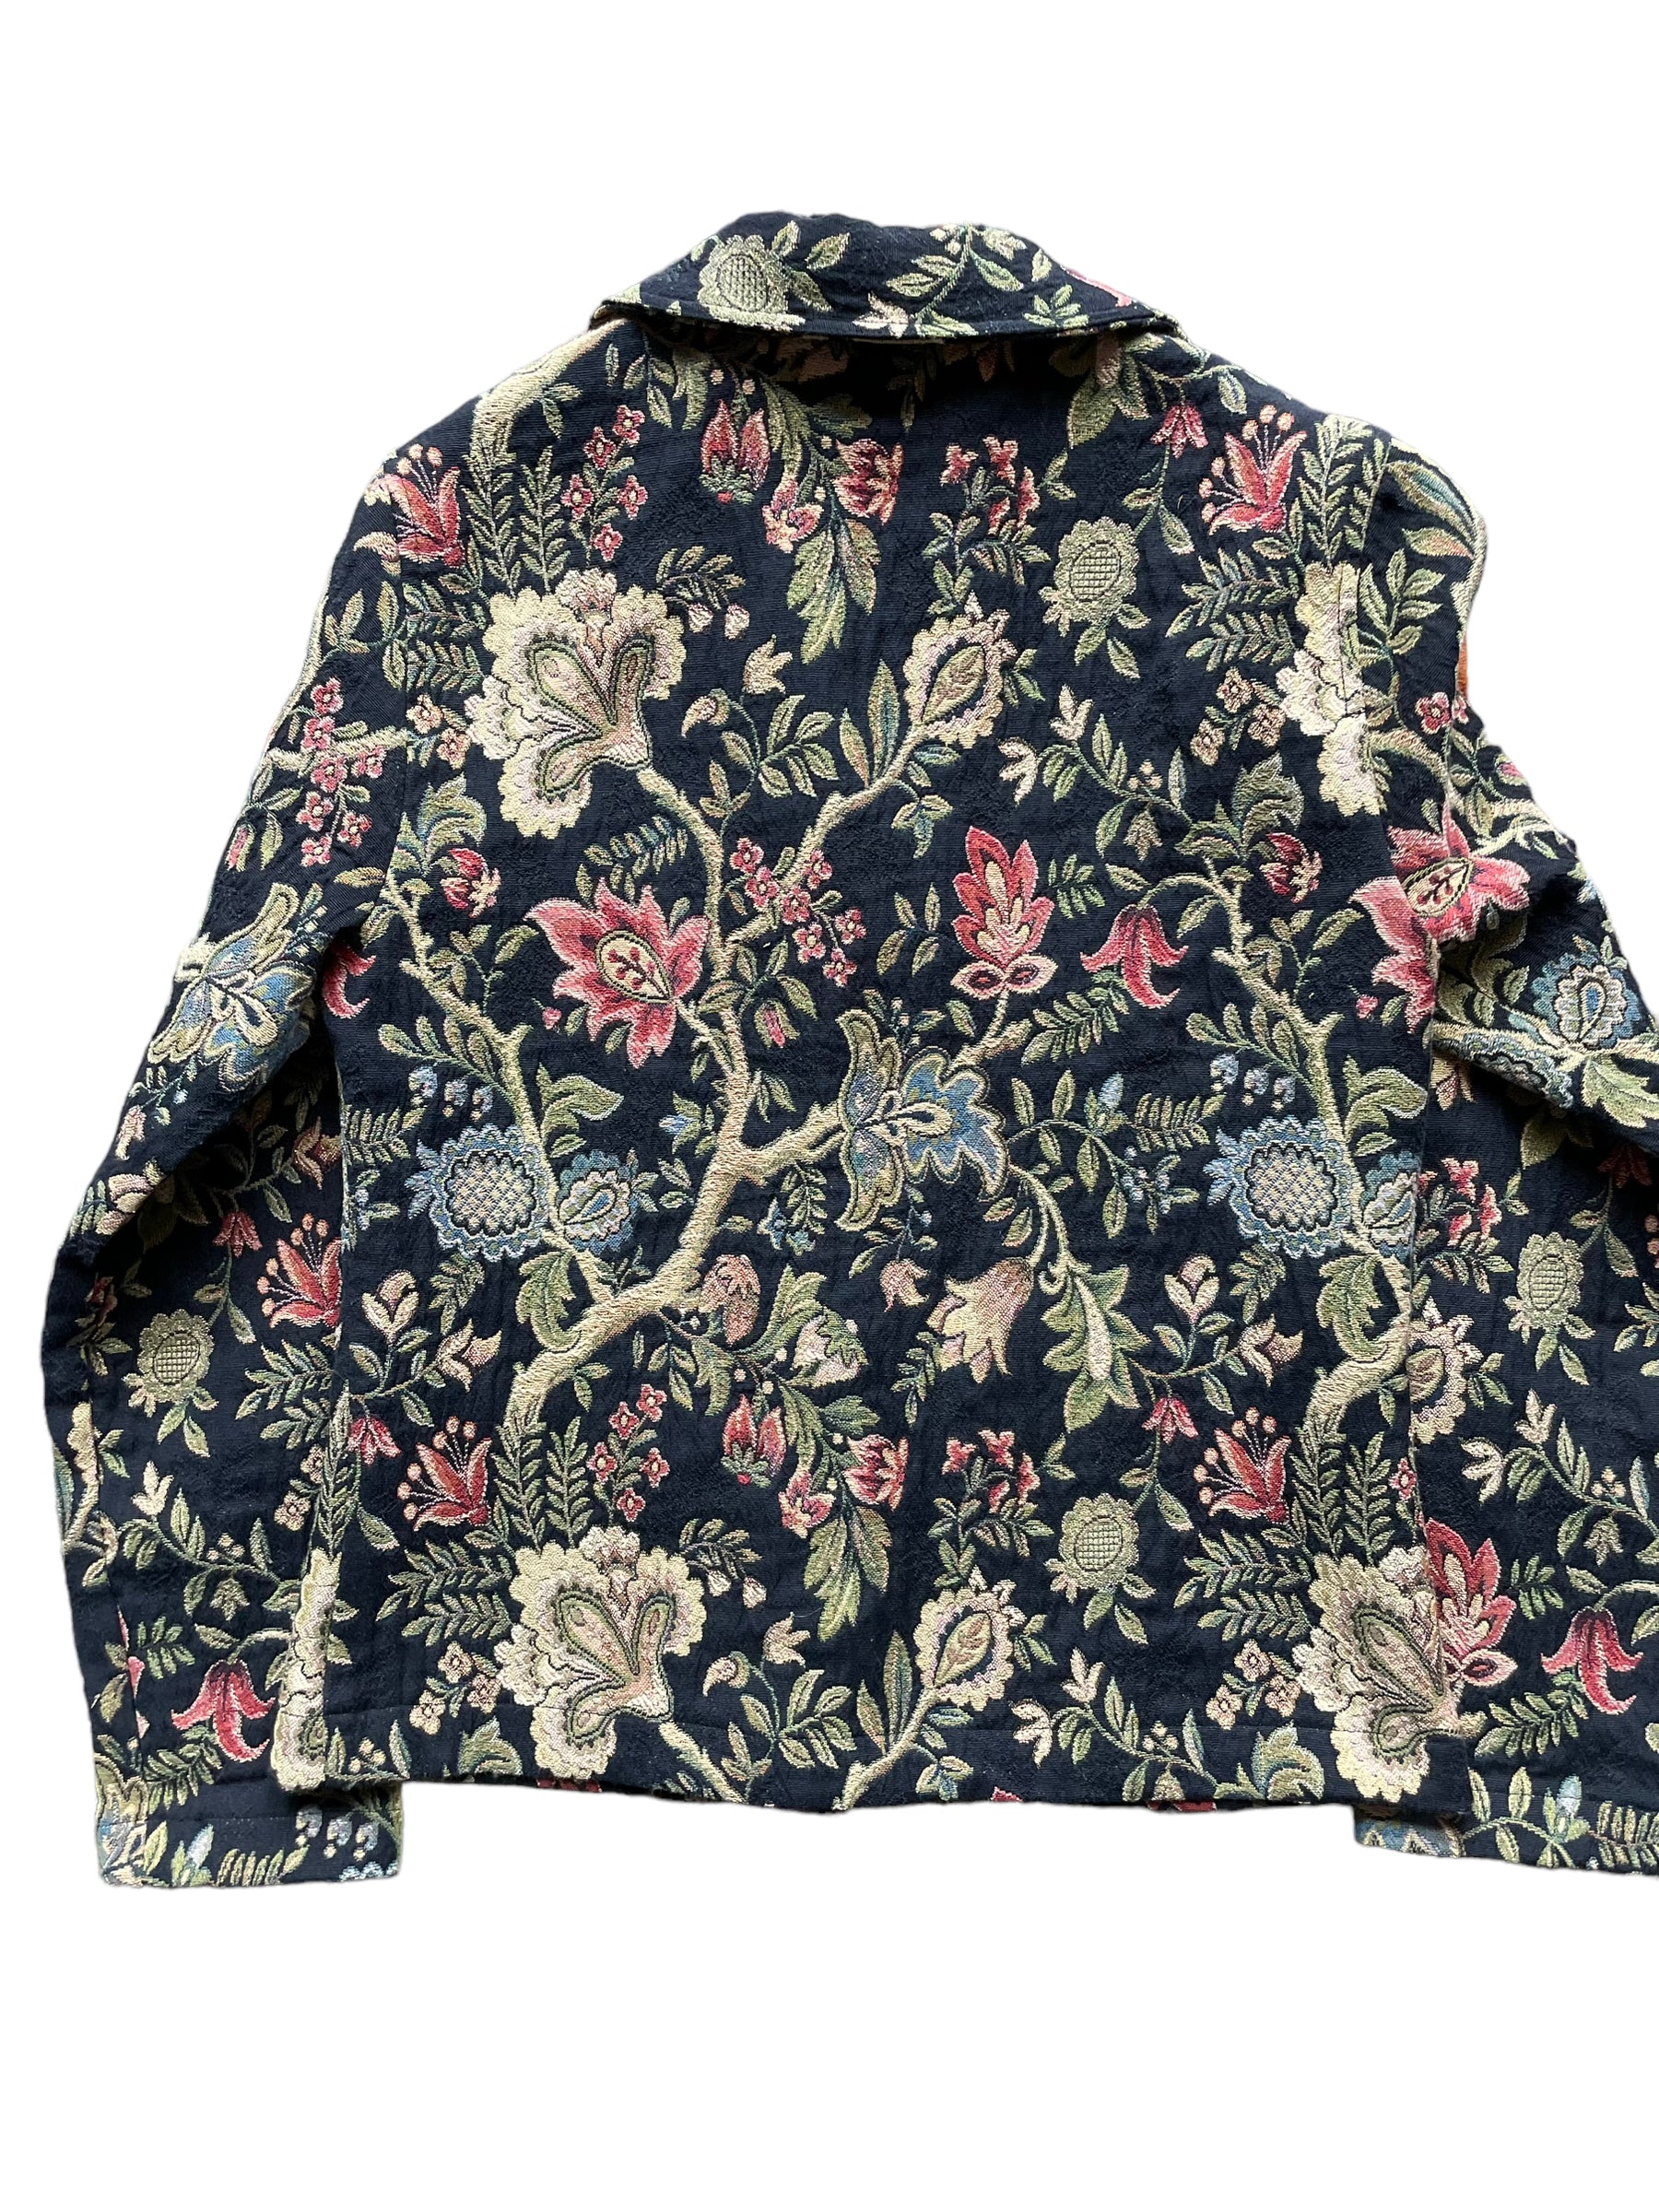 Full back view of Vintage 90s Ladies Tapestry Jacket | Seattle True Vintage | Barn Owl Ladies Clothing